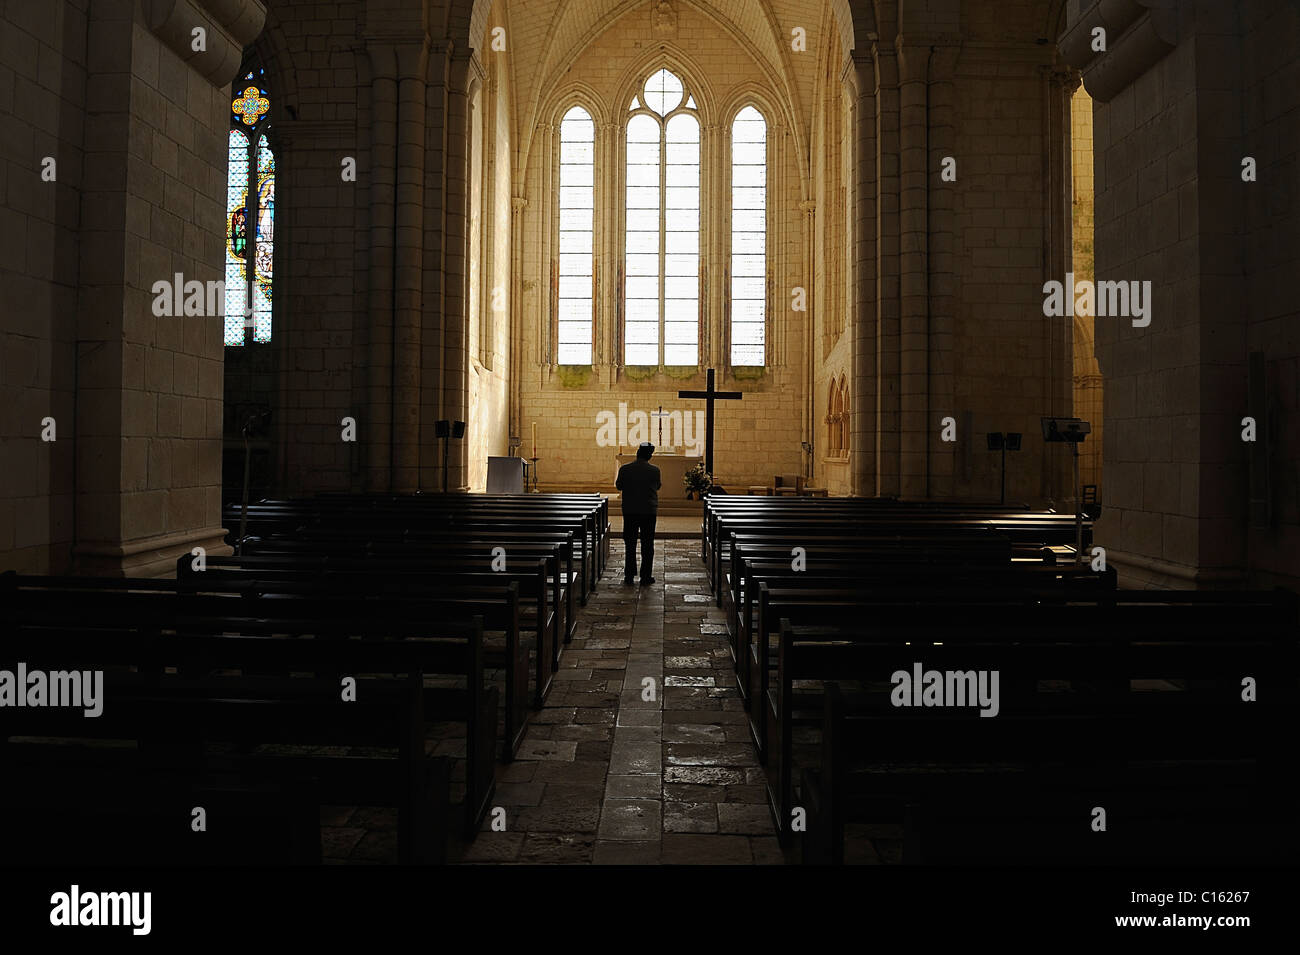 All'interno dell'abbazia di Sablonceaux, Charente Maritime dipartimento, Francia Foto Stock